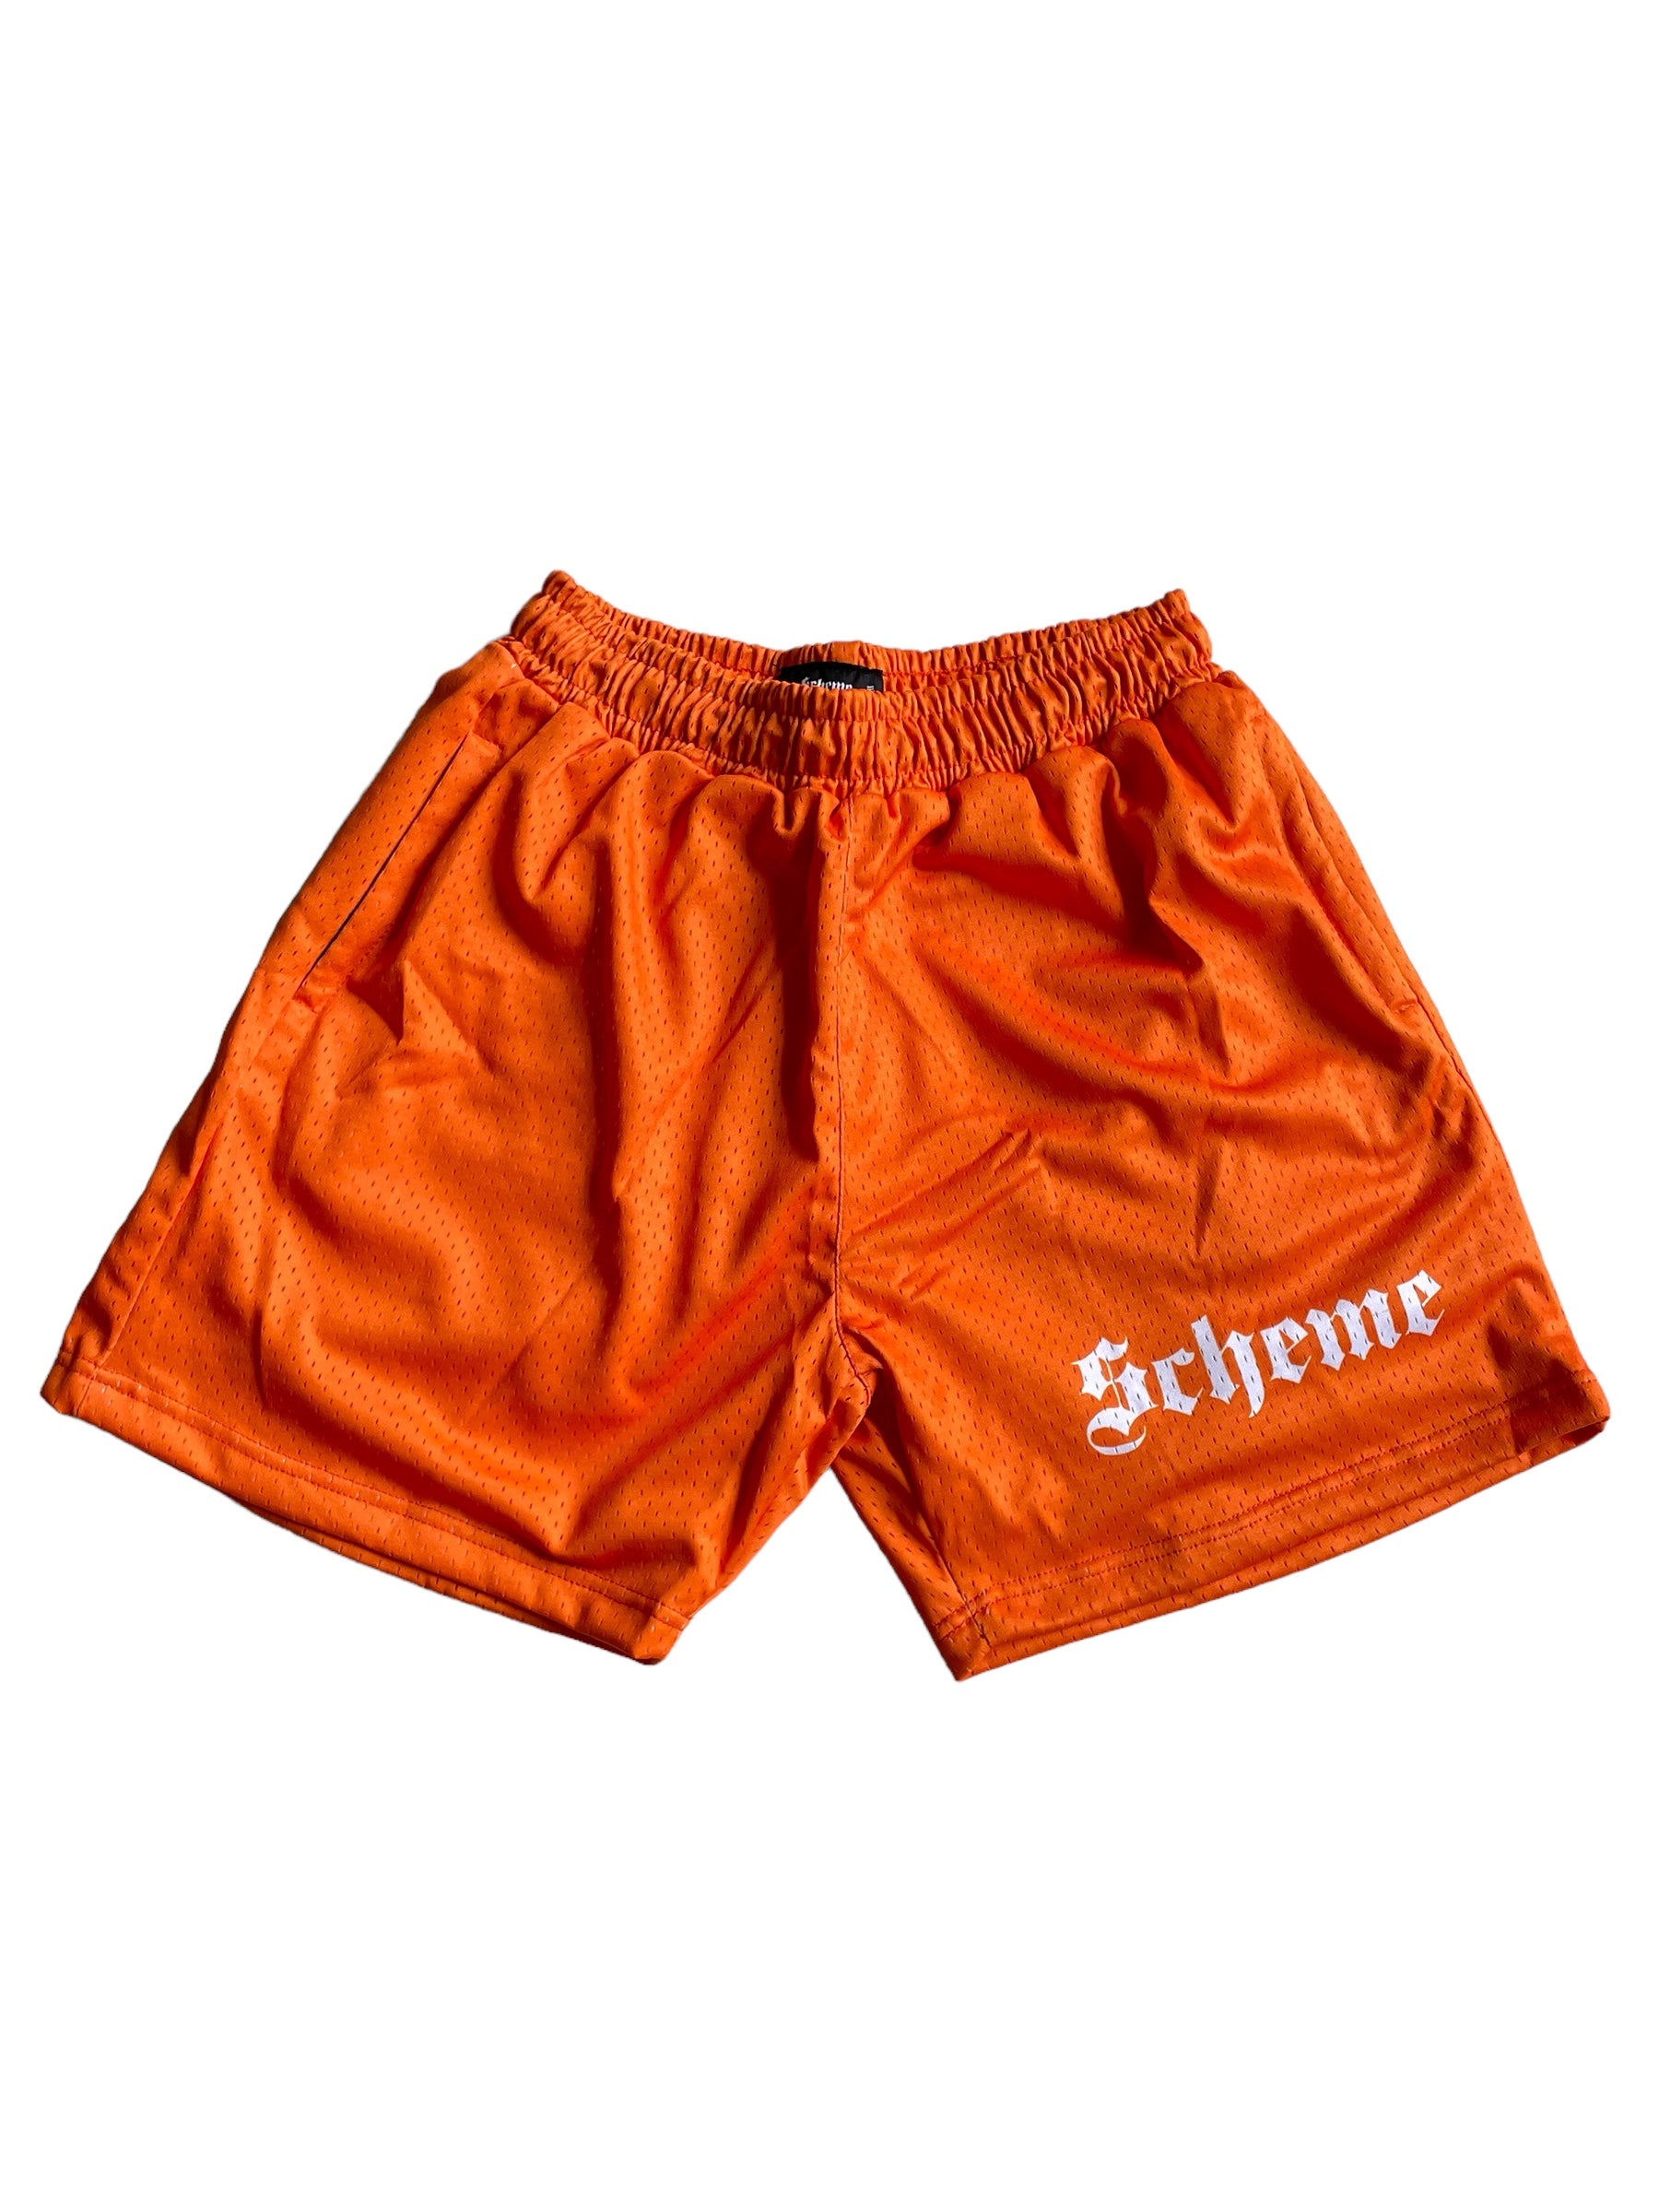 Orange Shorts